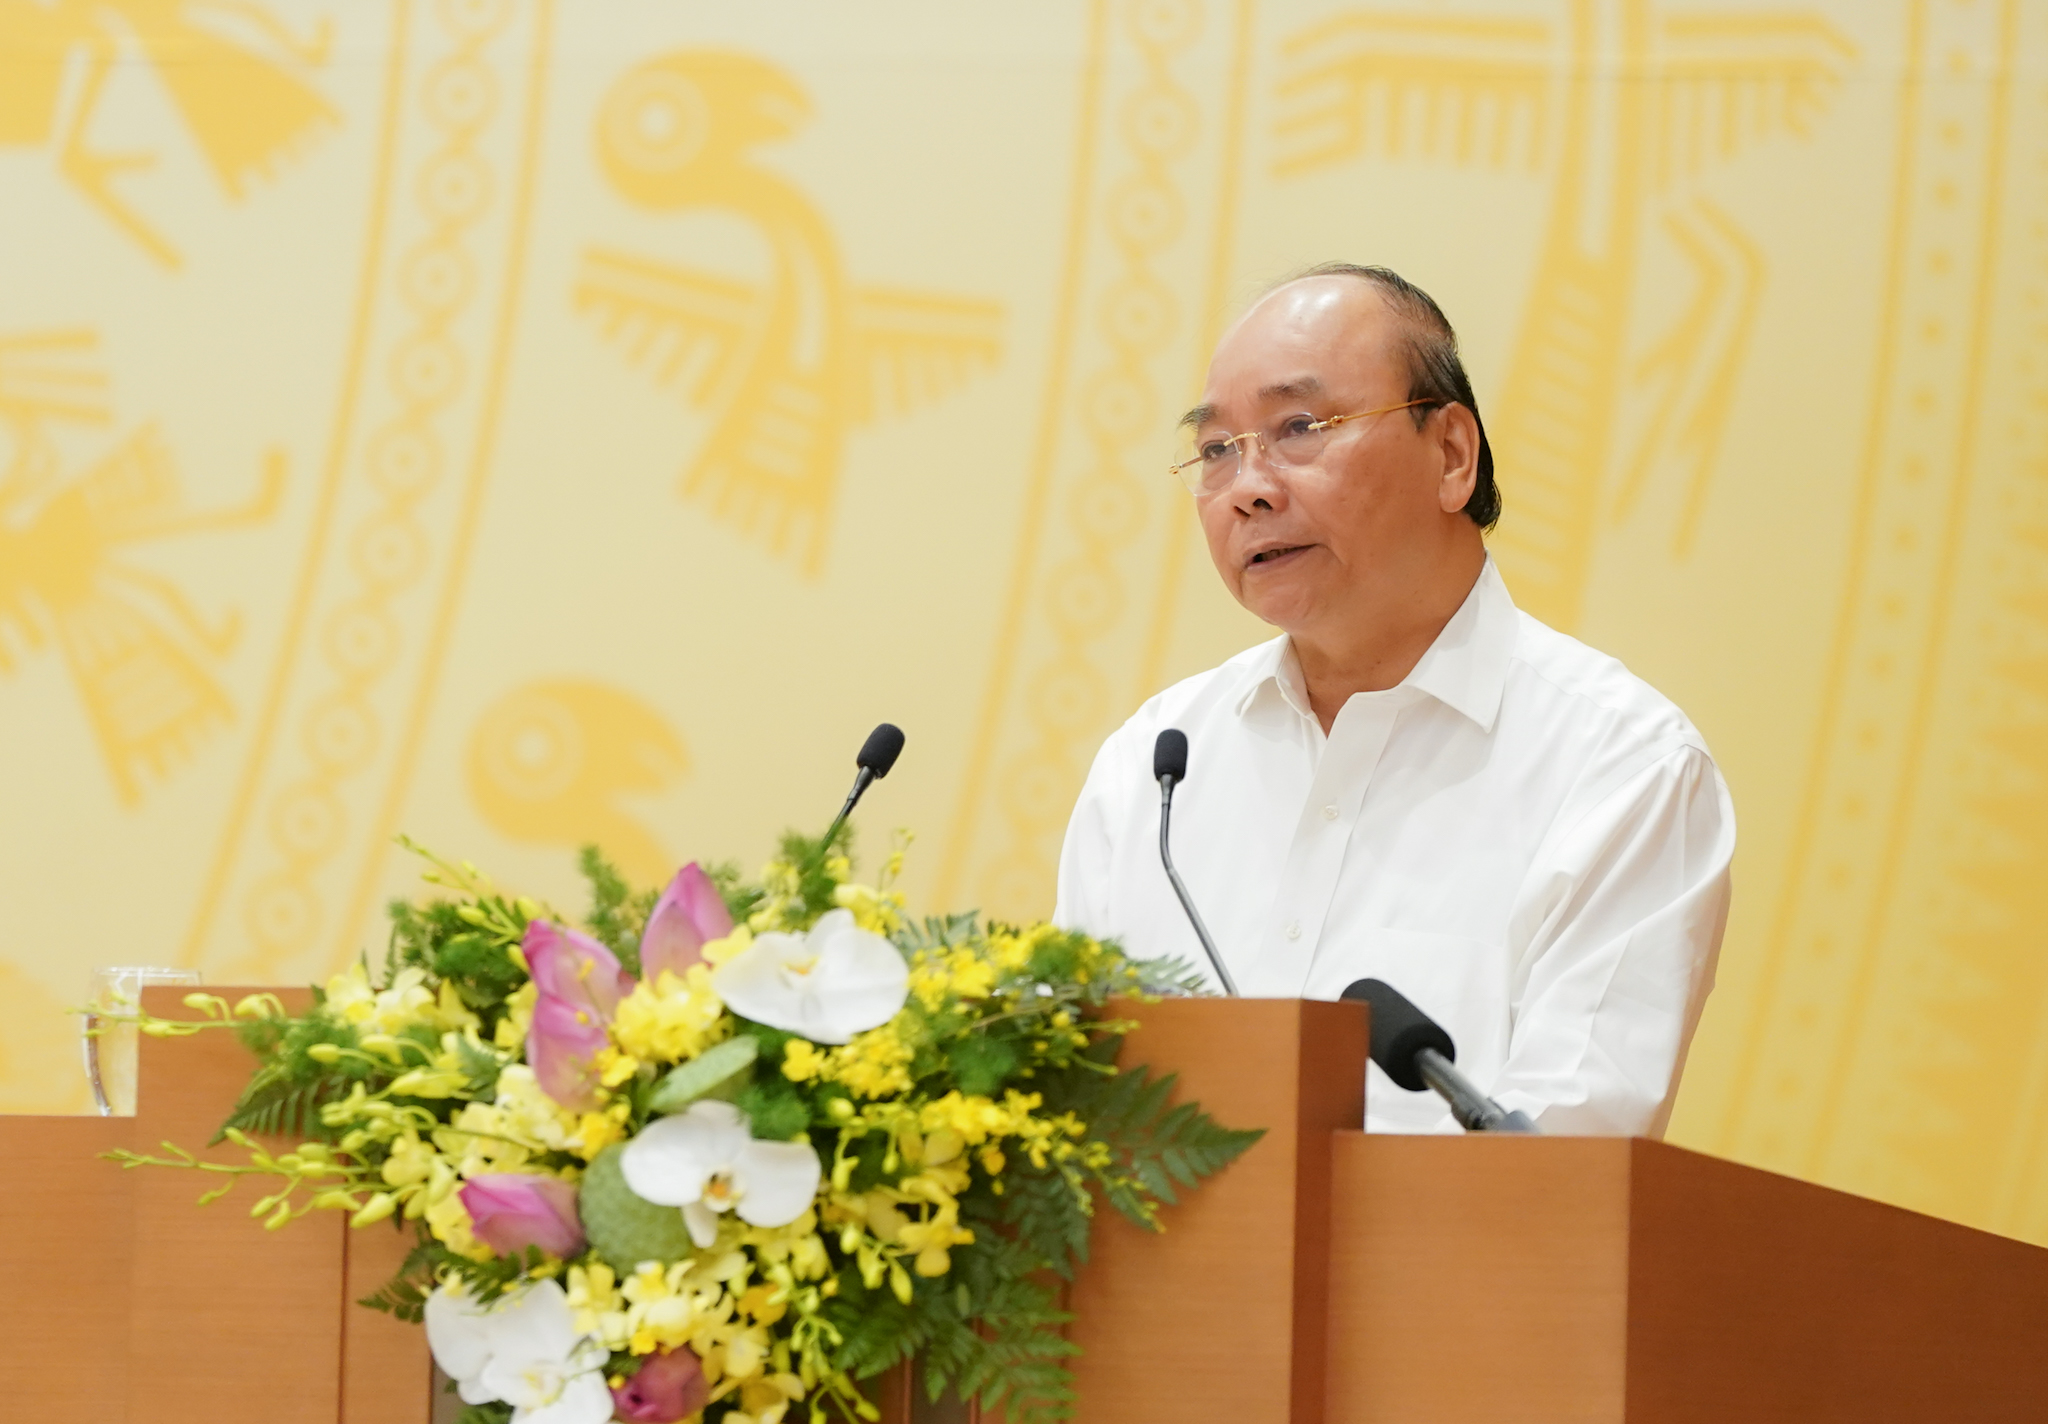 Thủ tướng Nguyễn Xuân Phúc: Phục vụ tốt nhân dân và doanh nghiệp mới tạo được động lực phát triển